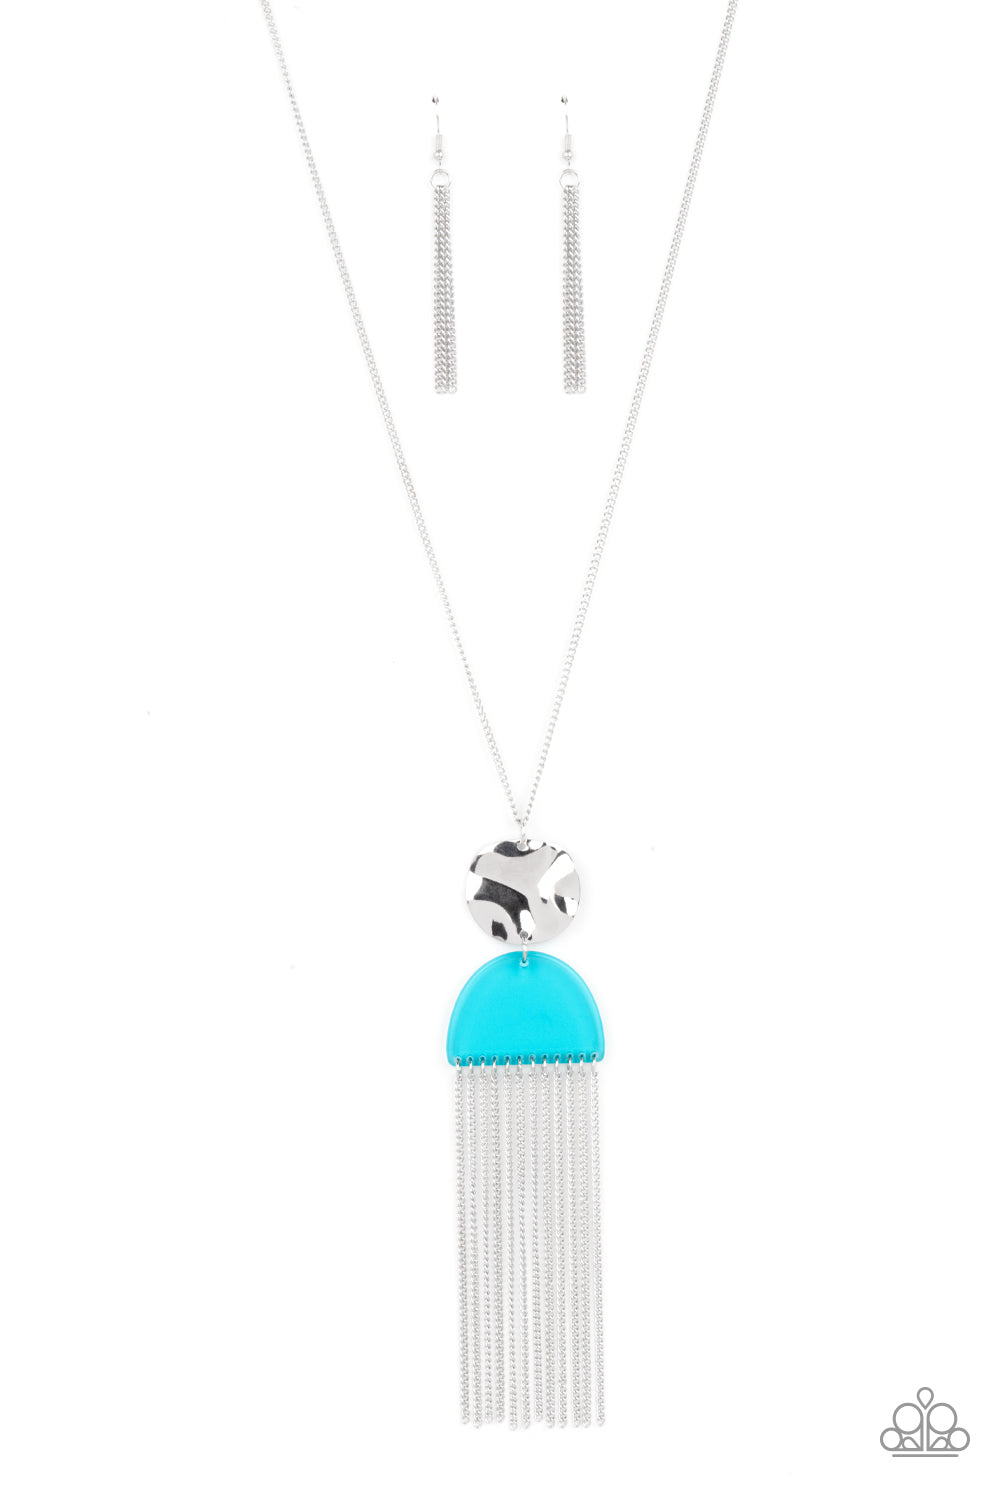 Color Me Neon - Blue Necklace Set - Princess Glam Shop